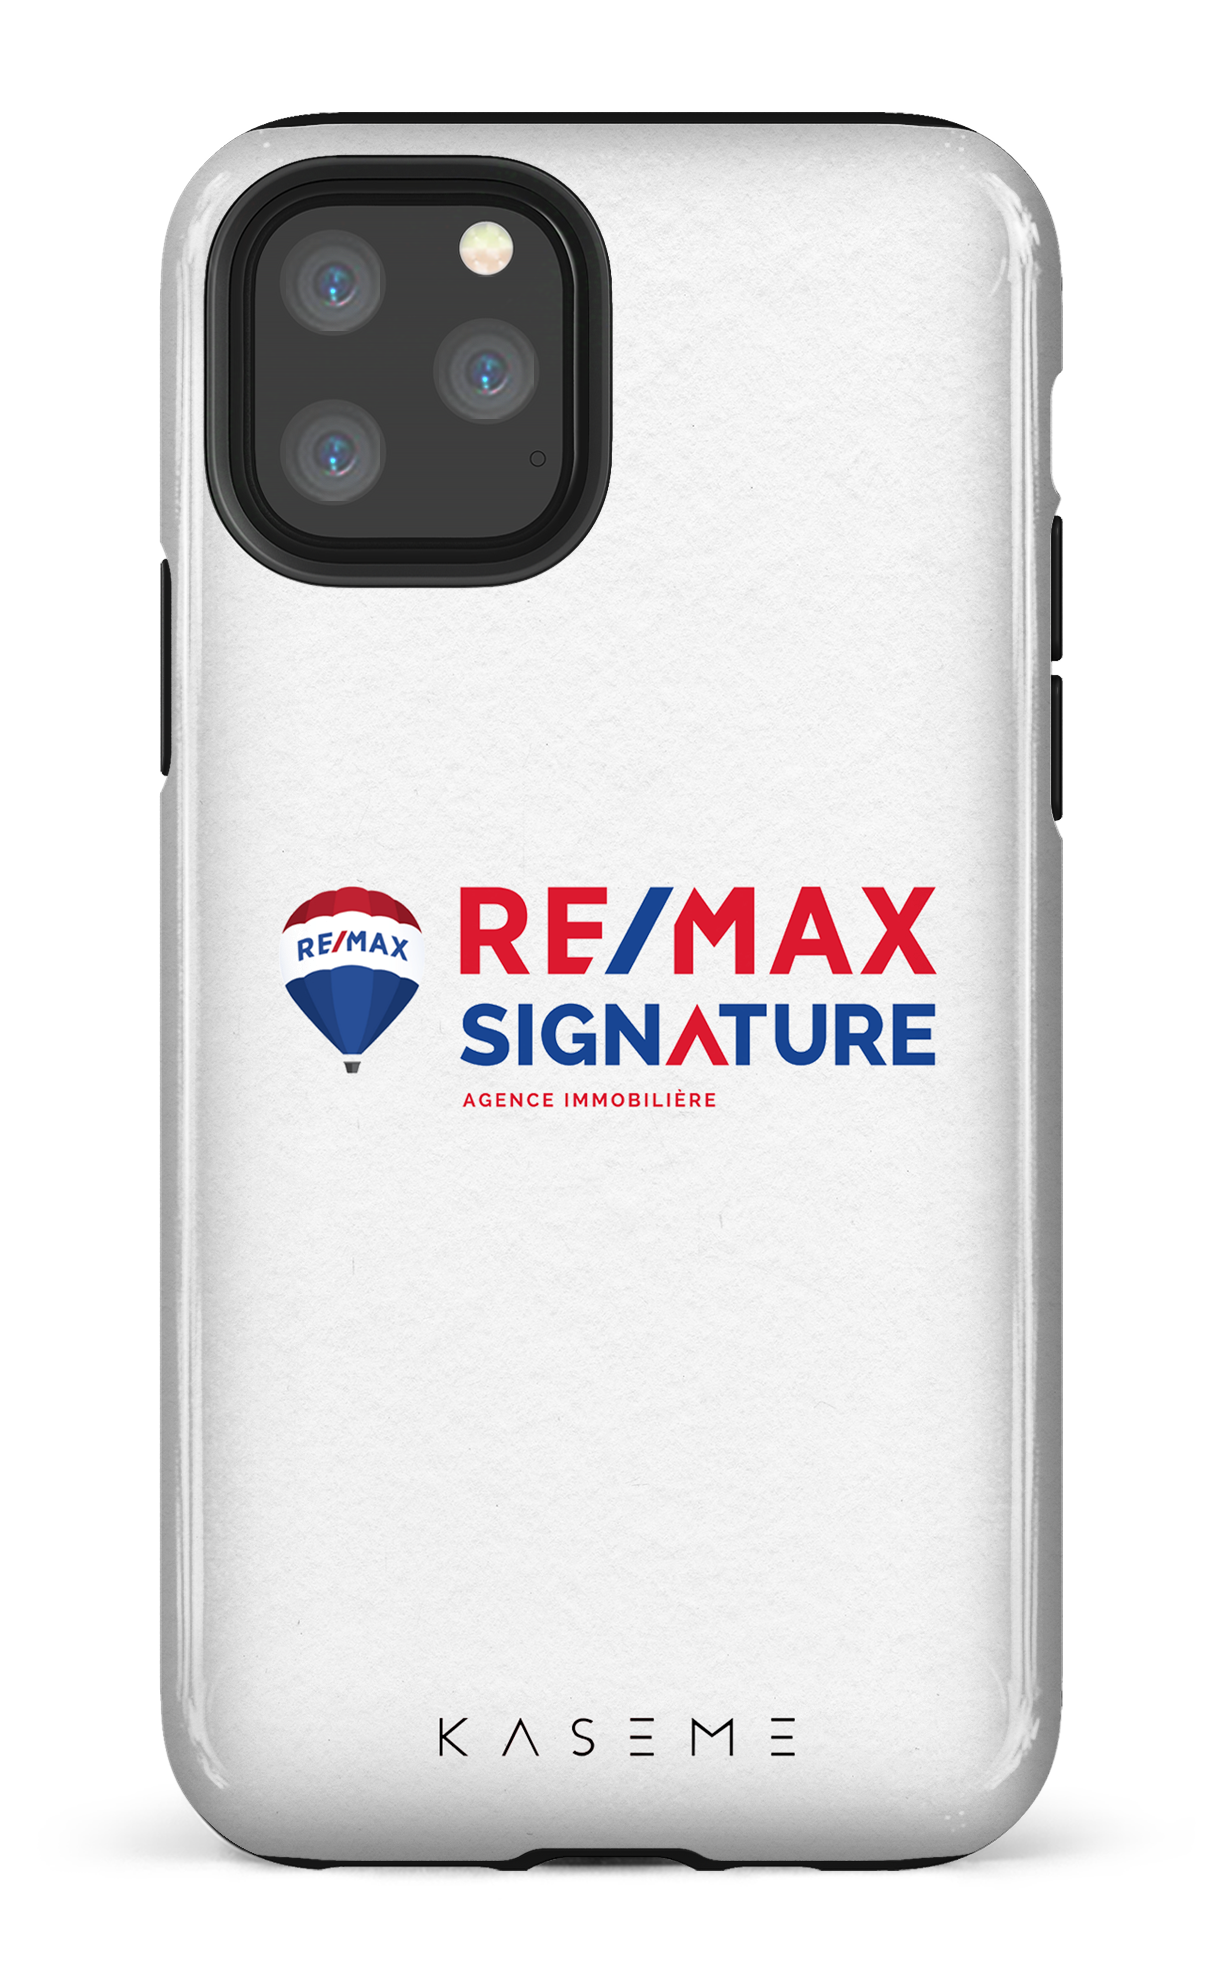 Remax Signature Blanc - iPhone 11 Pro